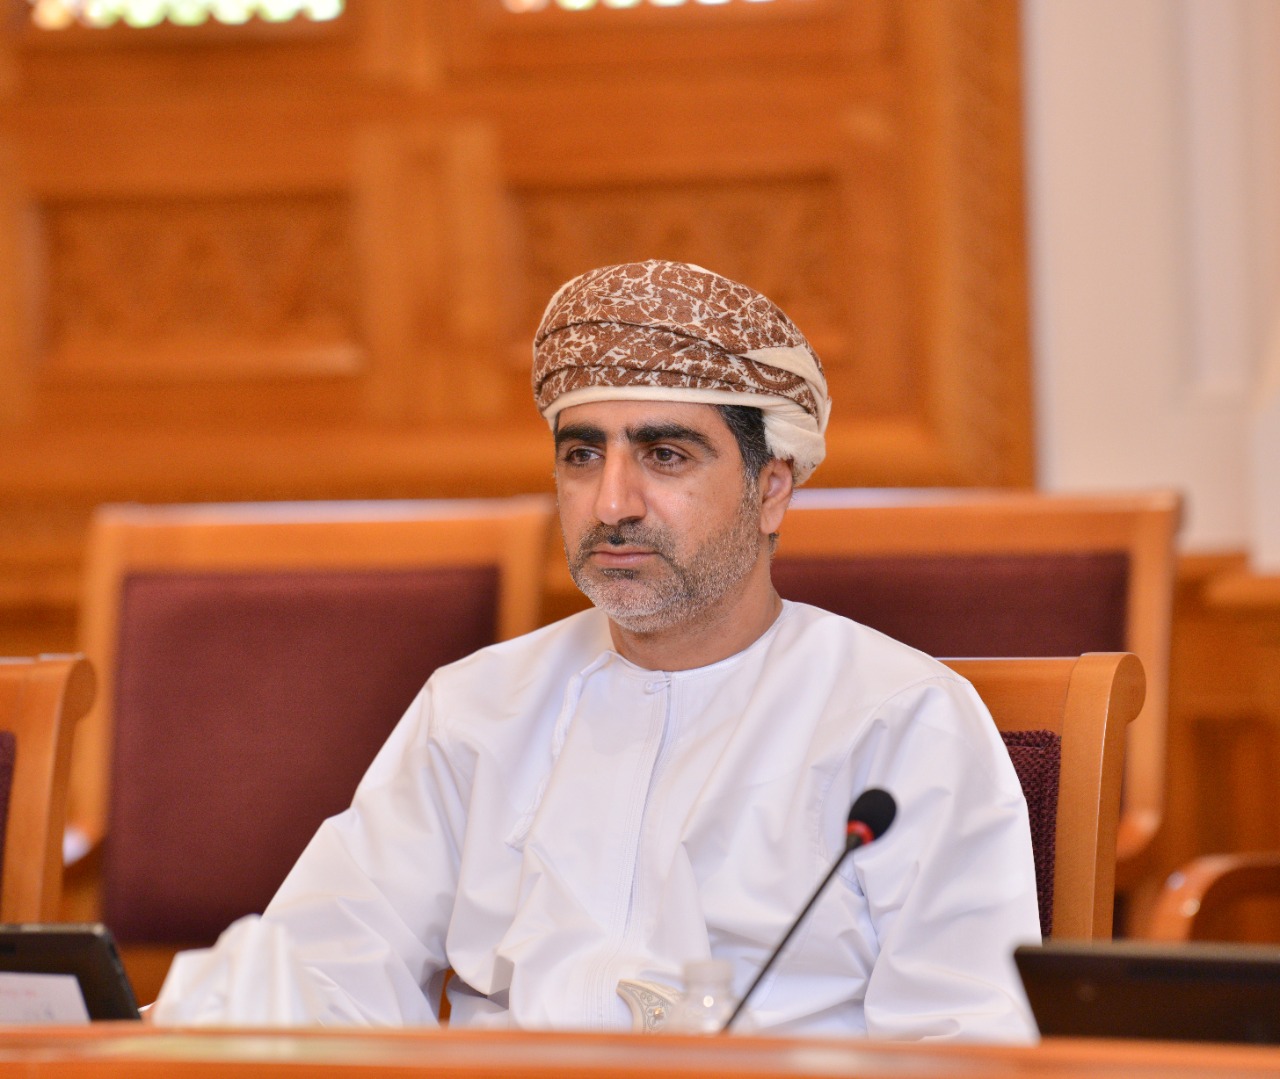 Oman Majlis Al Shura to discuss report on disagreements over VAT